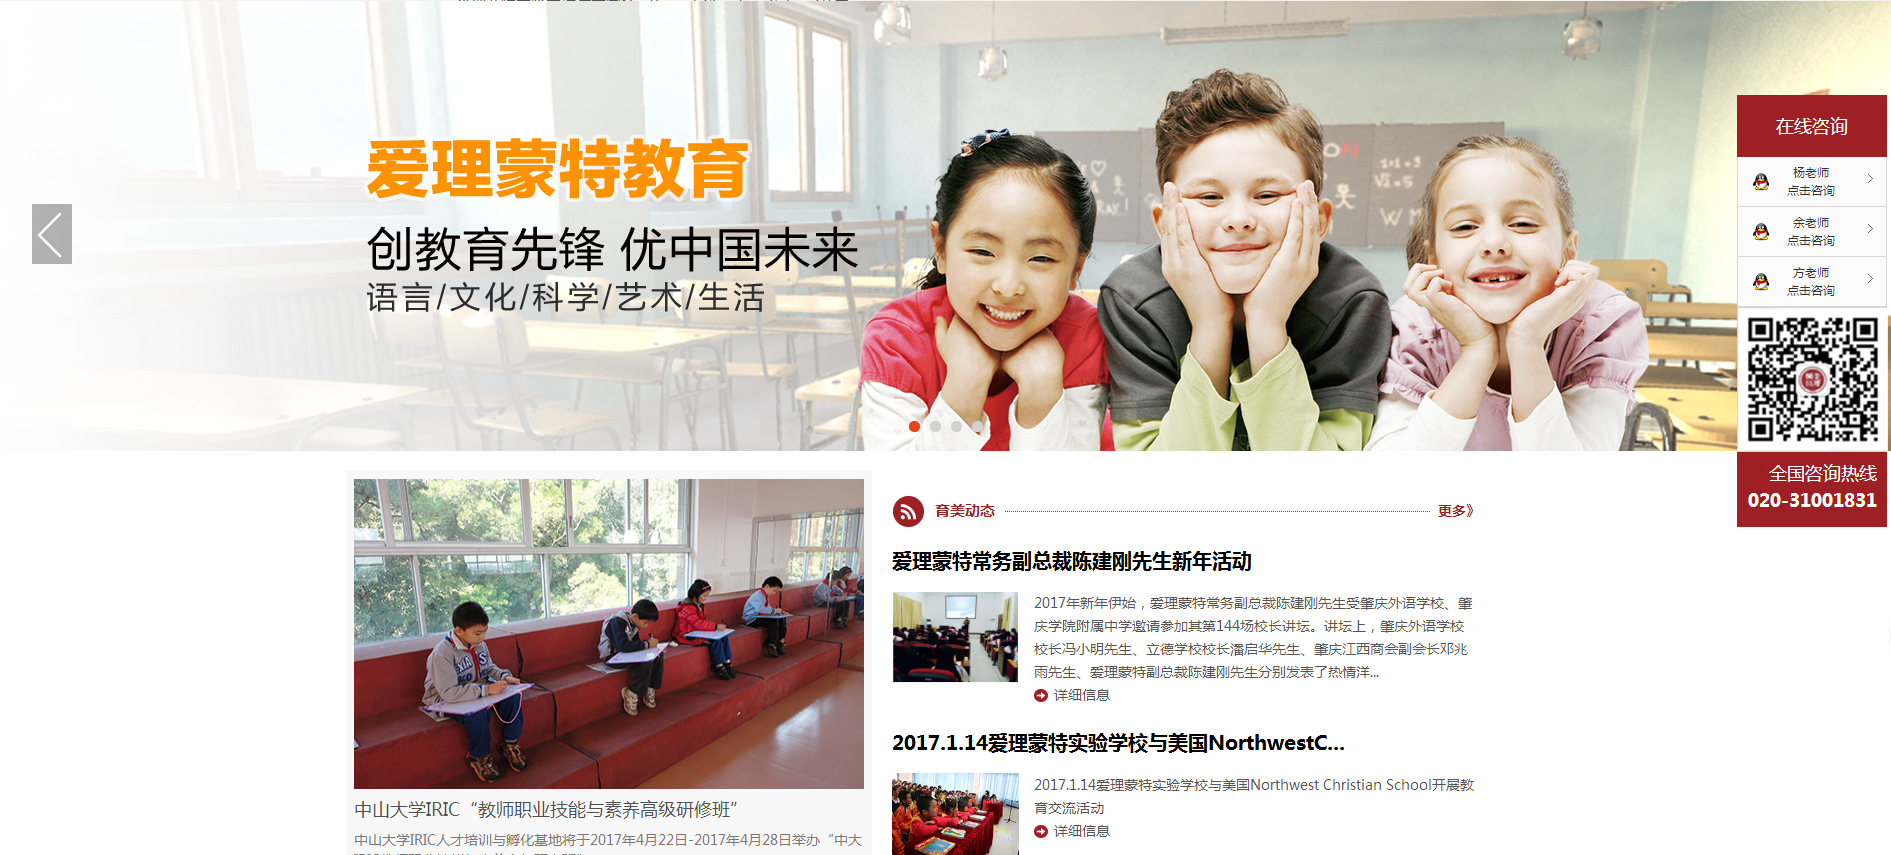 广州市育美教育科技有限公司